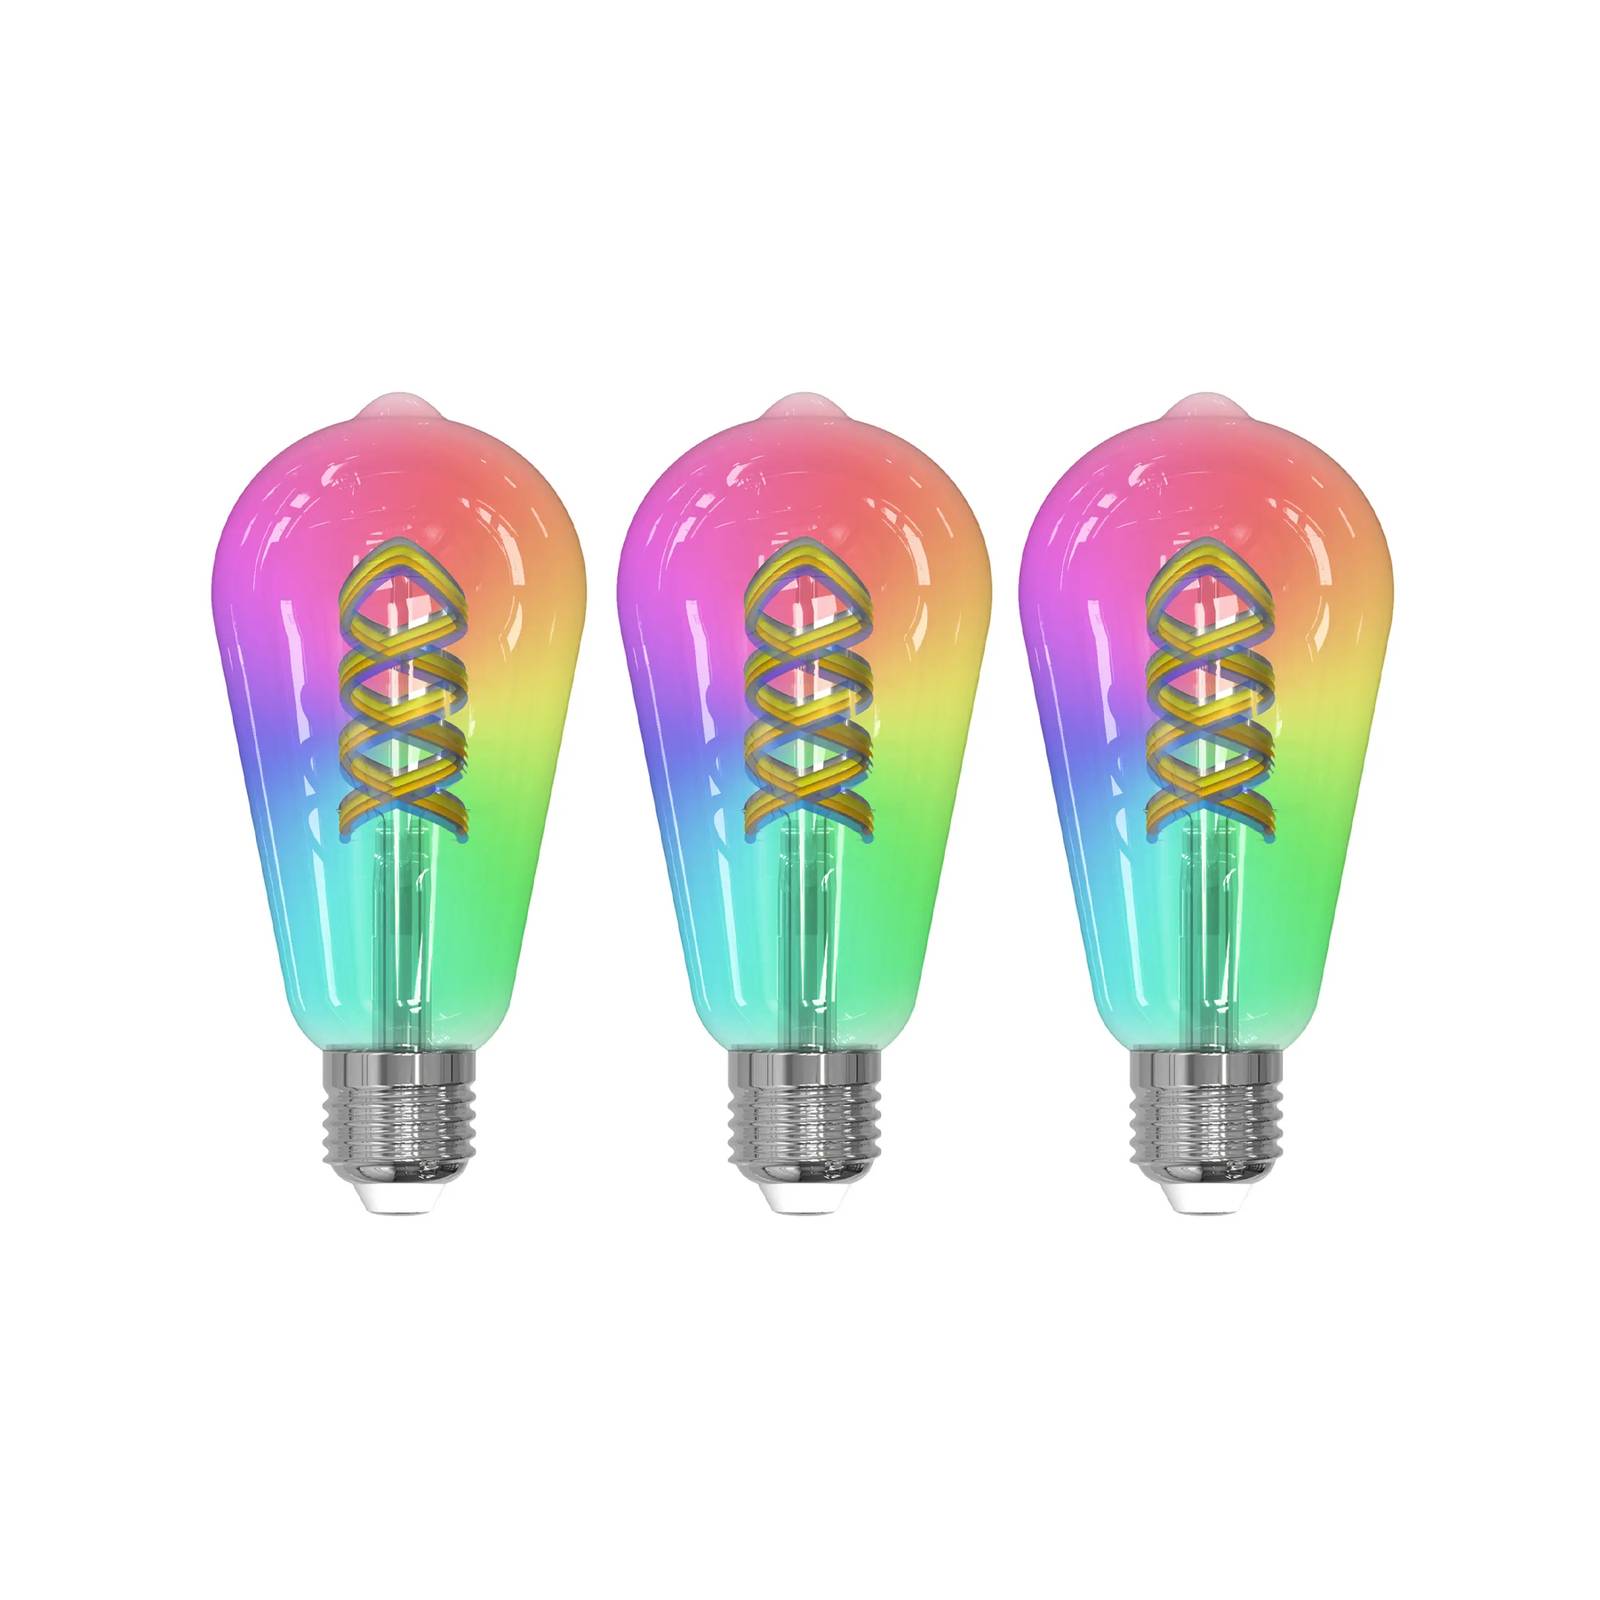 Prios LED-filament E27 ST64 4W RGB WLAN klar 3stk